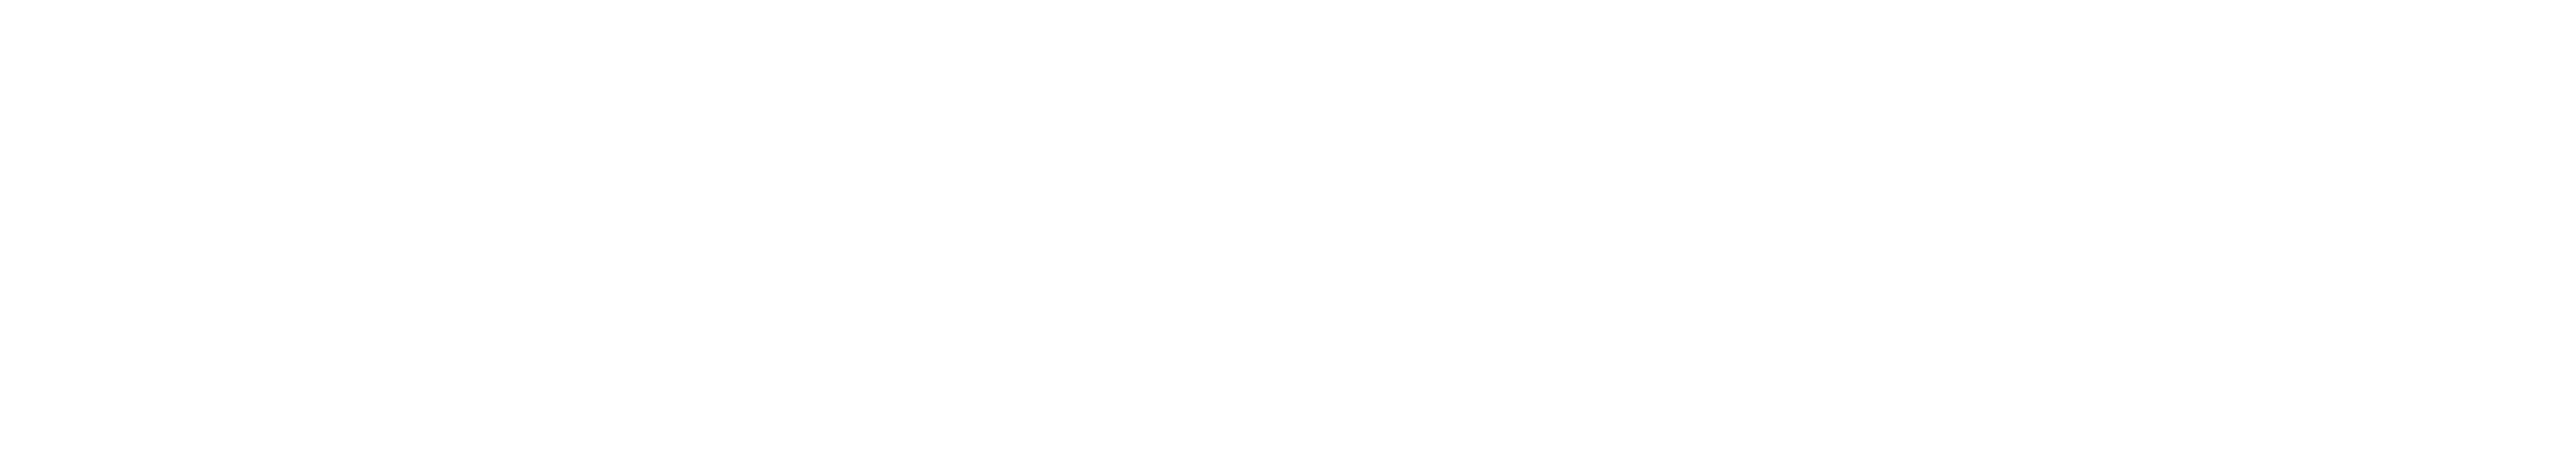 DeRALLYweb.com